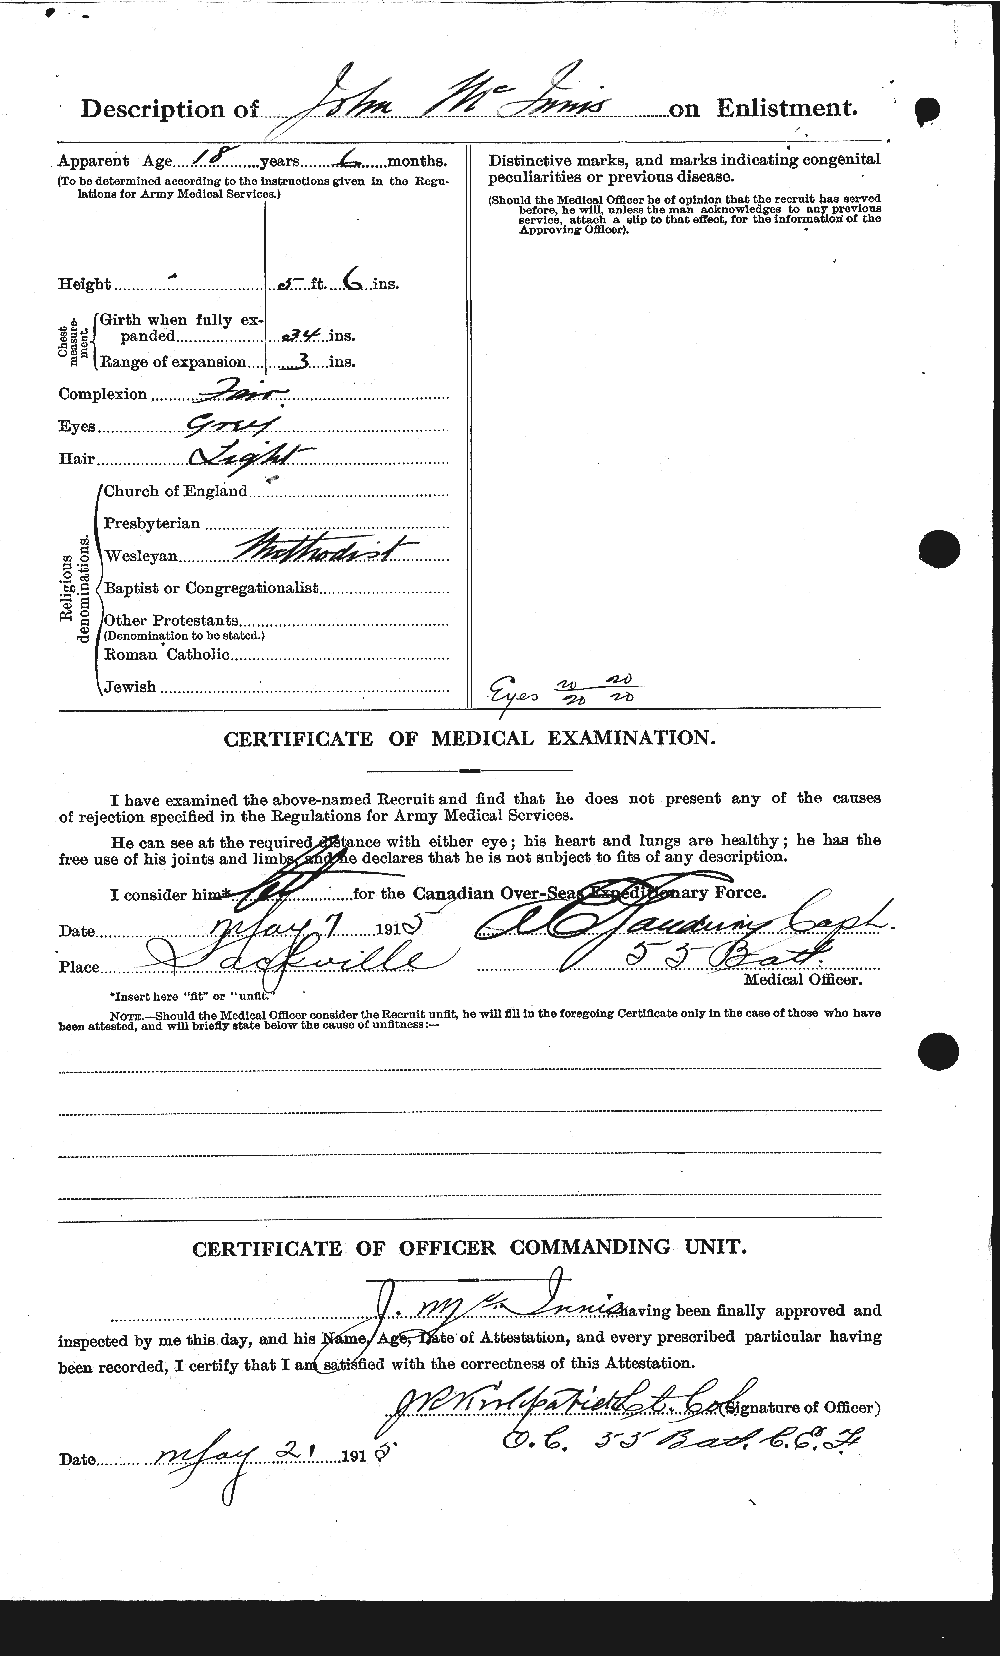 Dossiers du Personnel de la Première Guerre mondiale - CEC 526843b